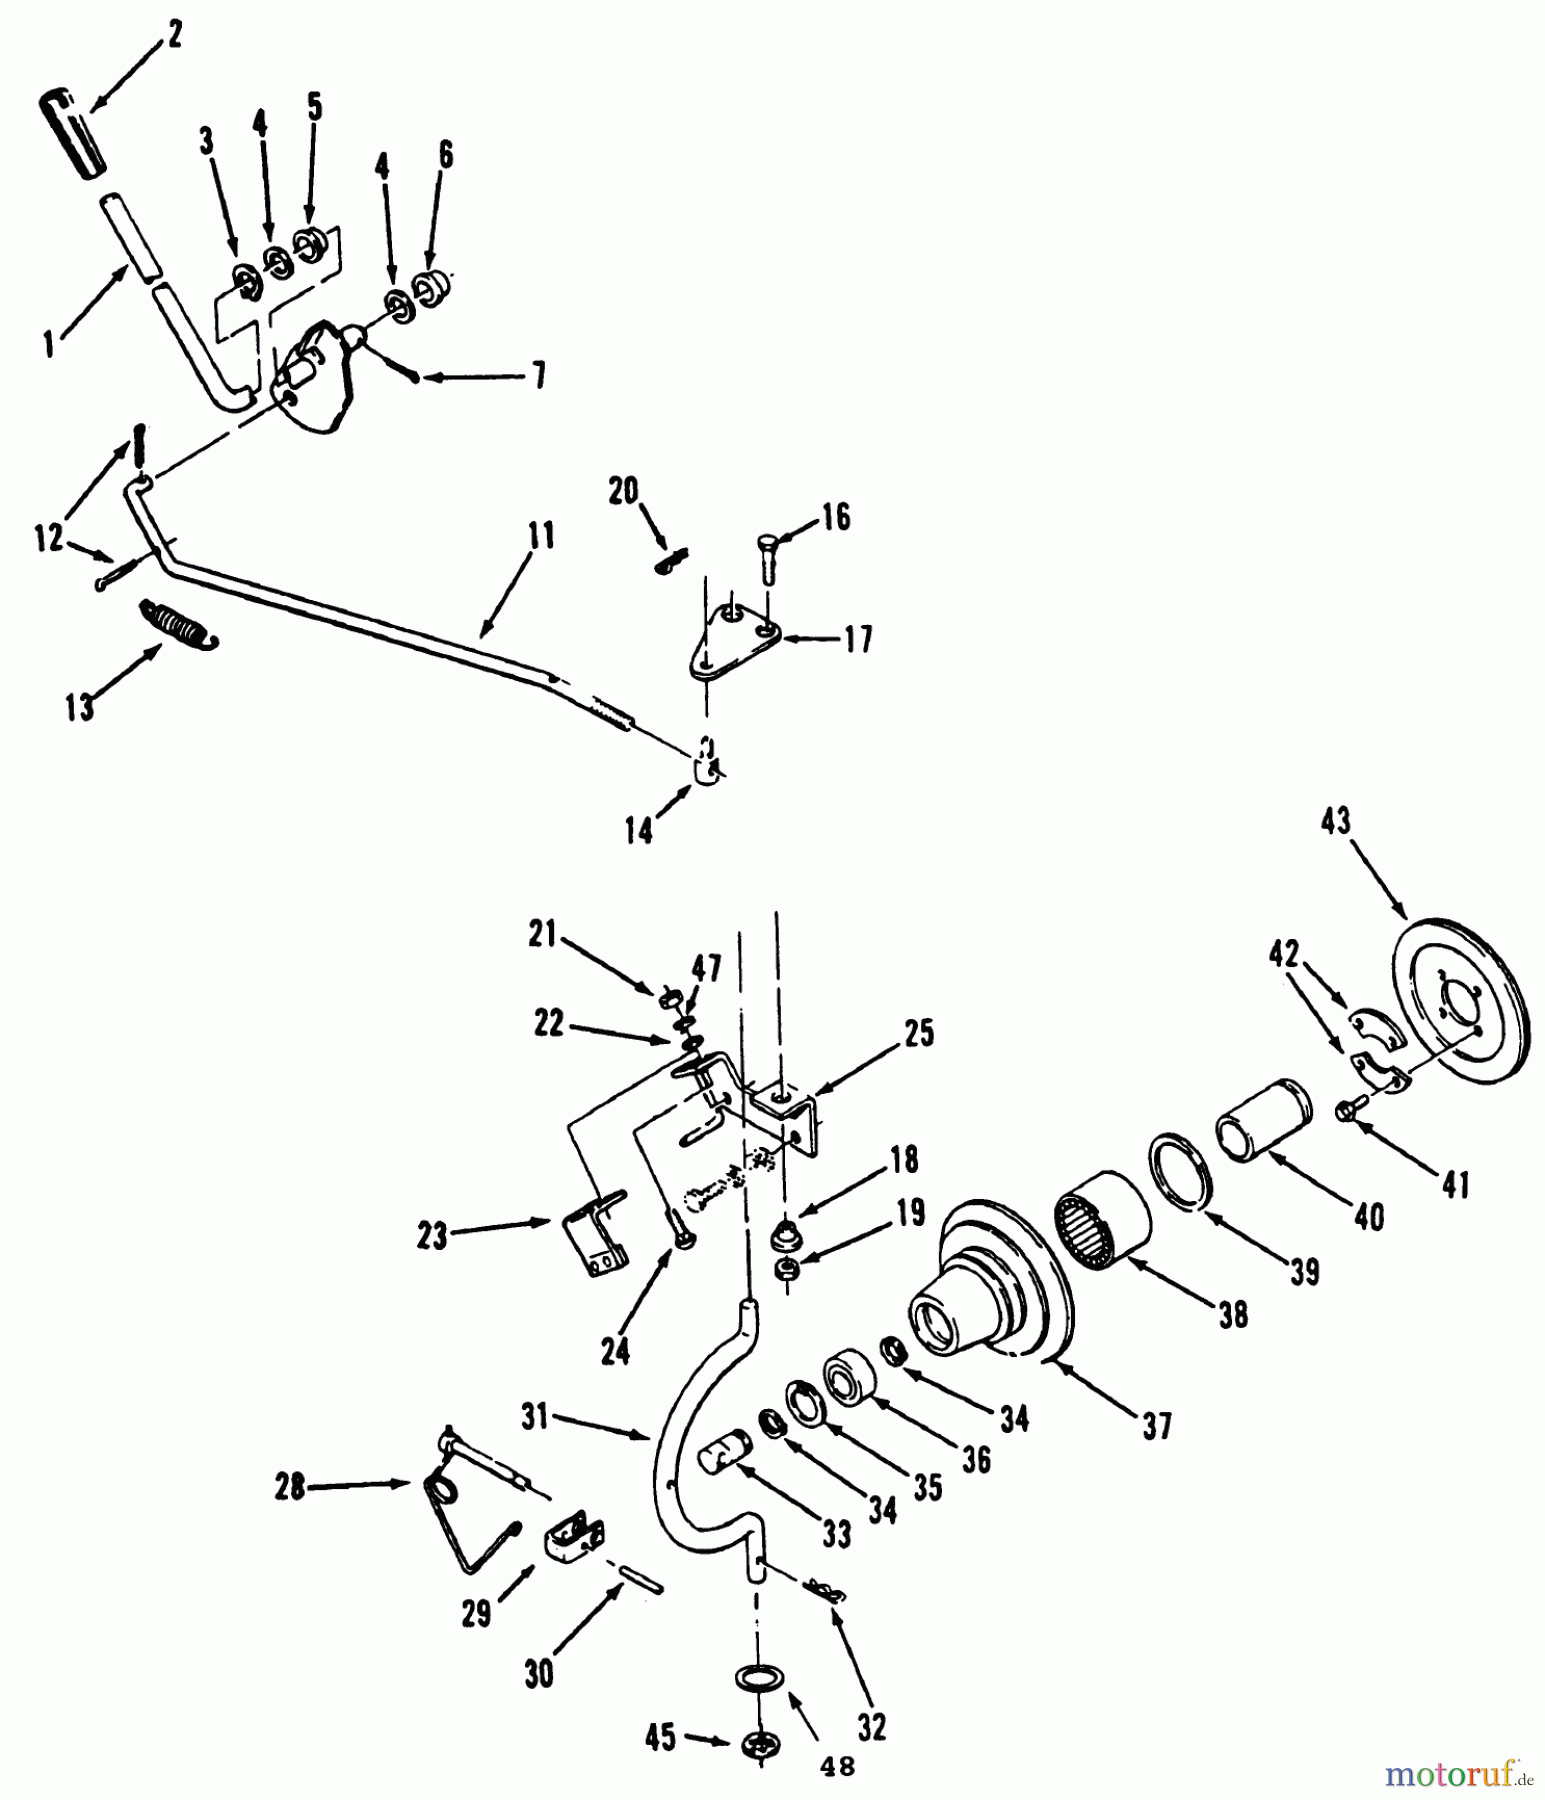  Toro Neu Mowers, Lawn & Garden Tractor Seite 1 31-16O804 (416-8) - Toro 416-8 Garden Tractor, 1992 (2000001-2999999) PTO CLUTCH AND CONTROL